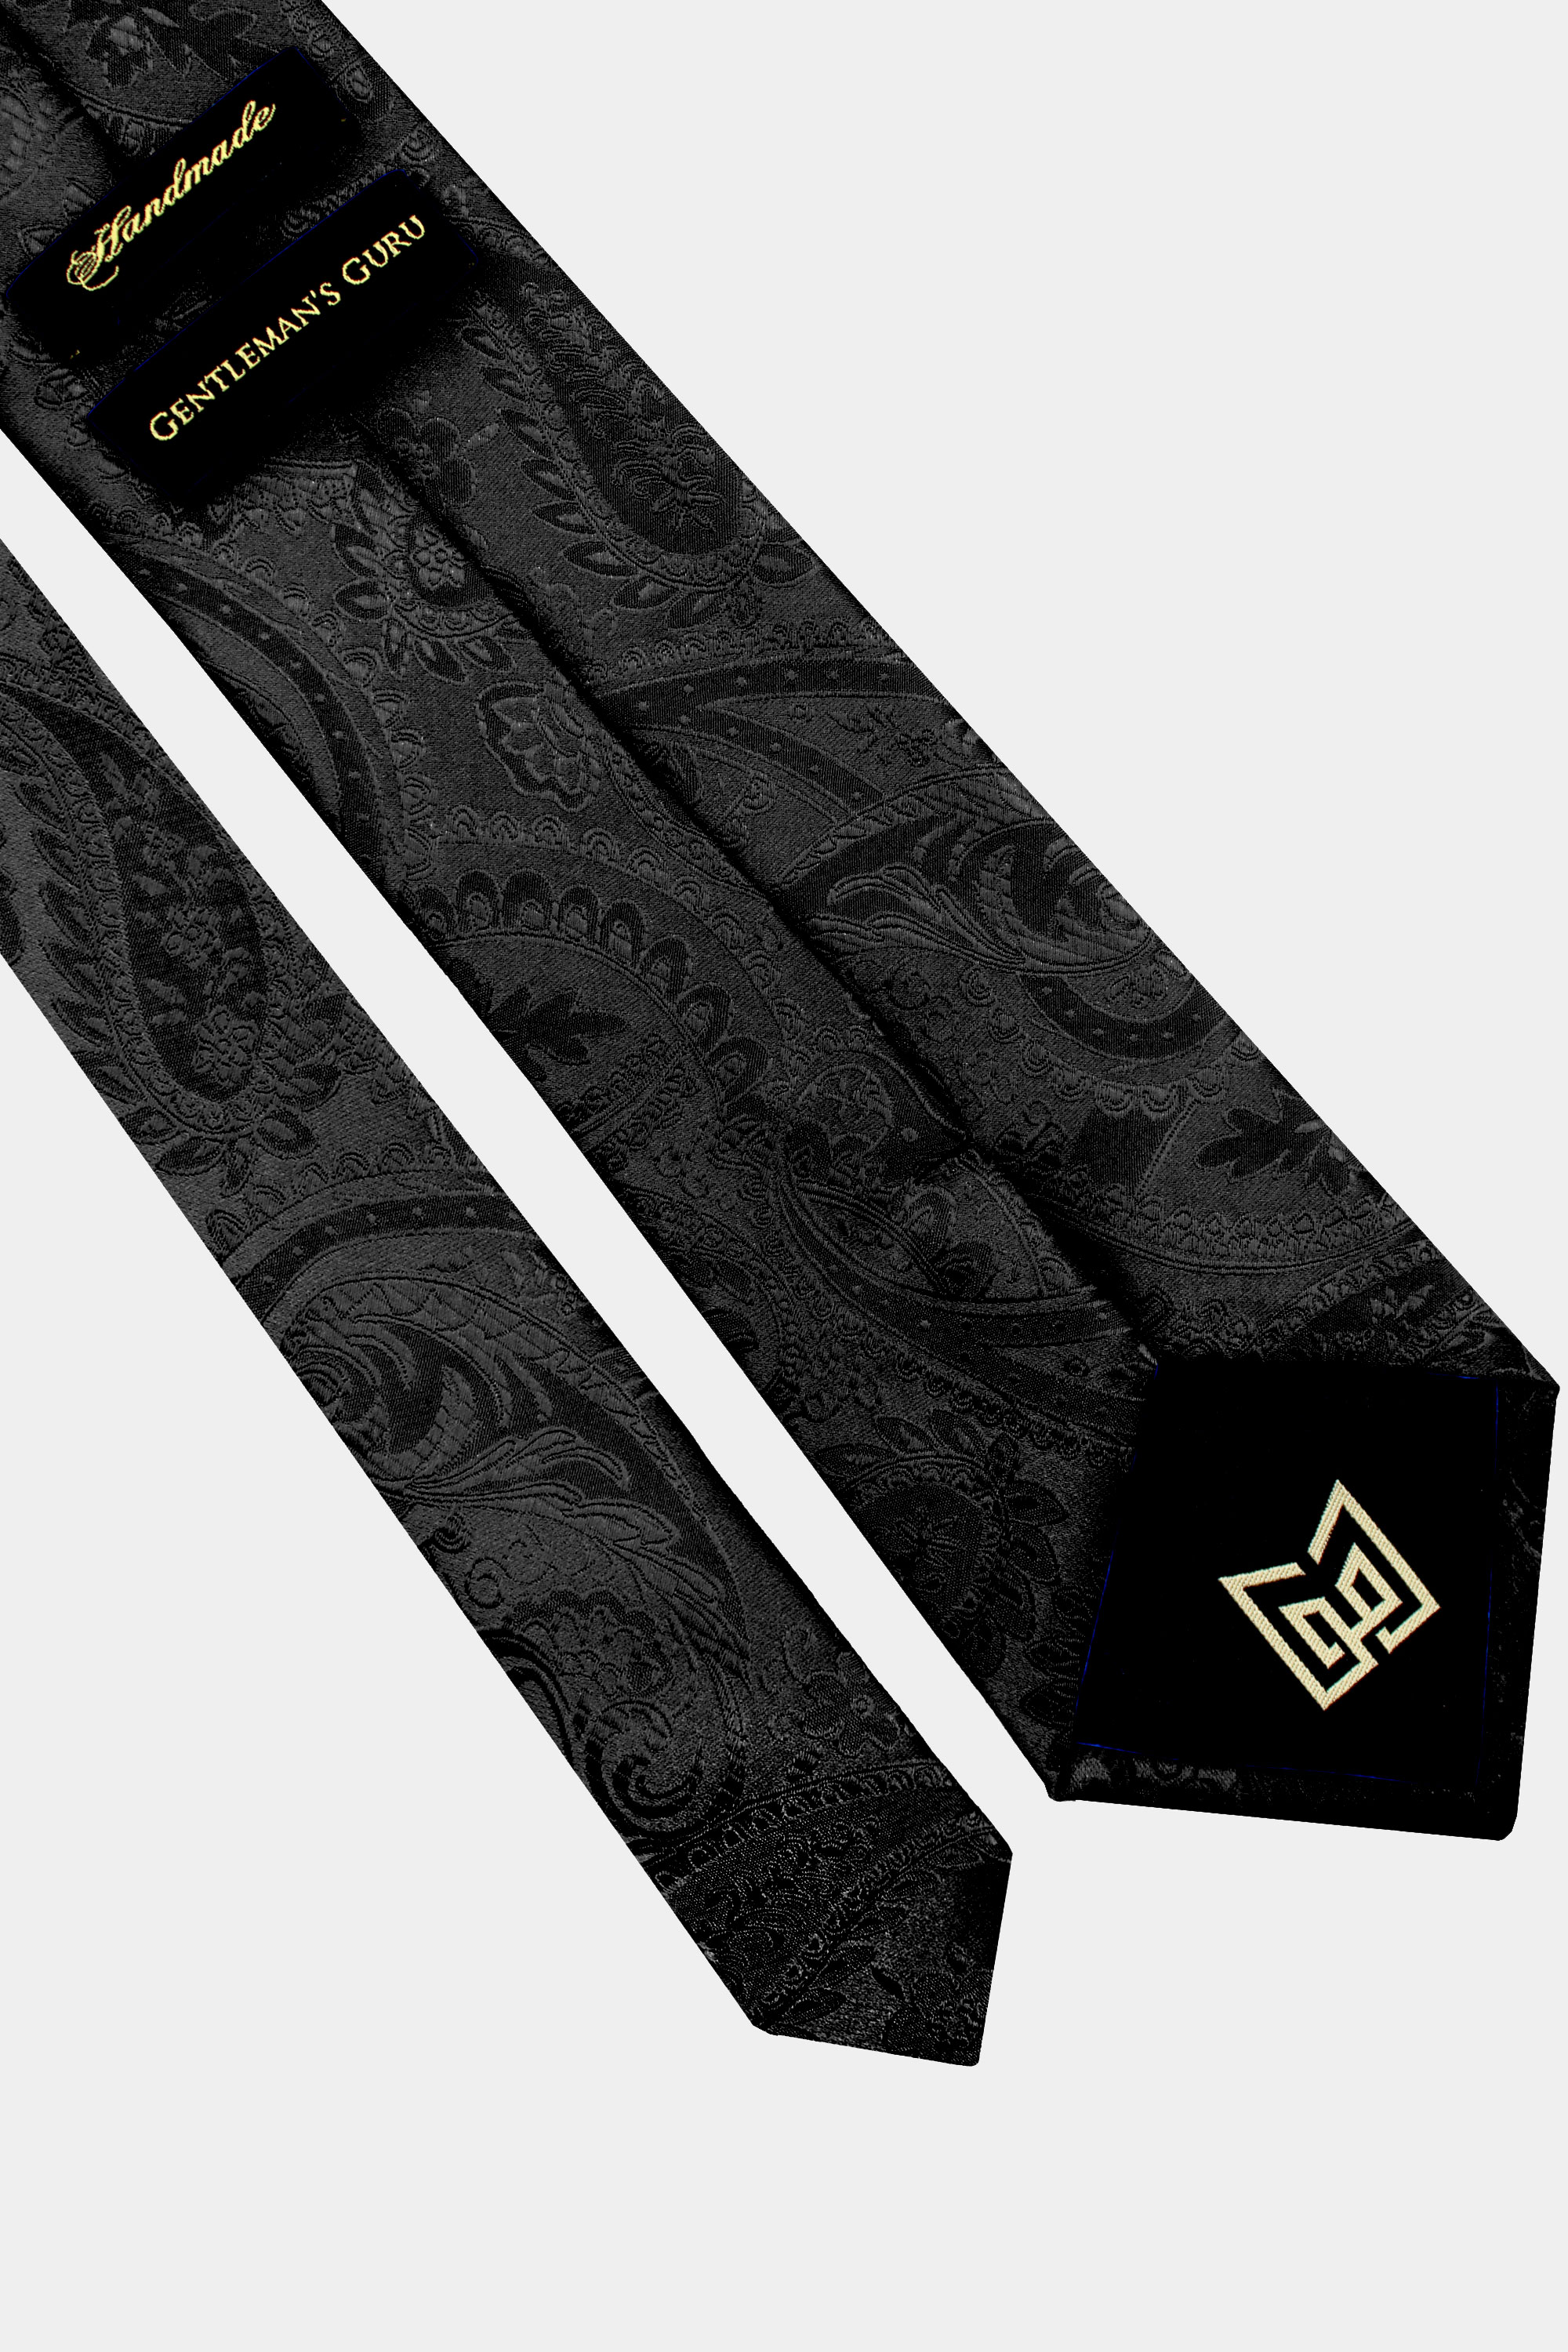 Black-Paisley-Tie-from-Gentlemansguru.com